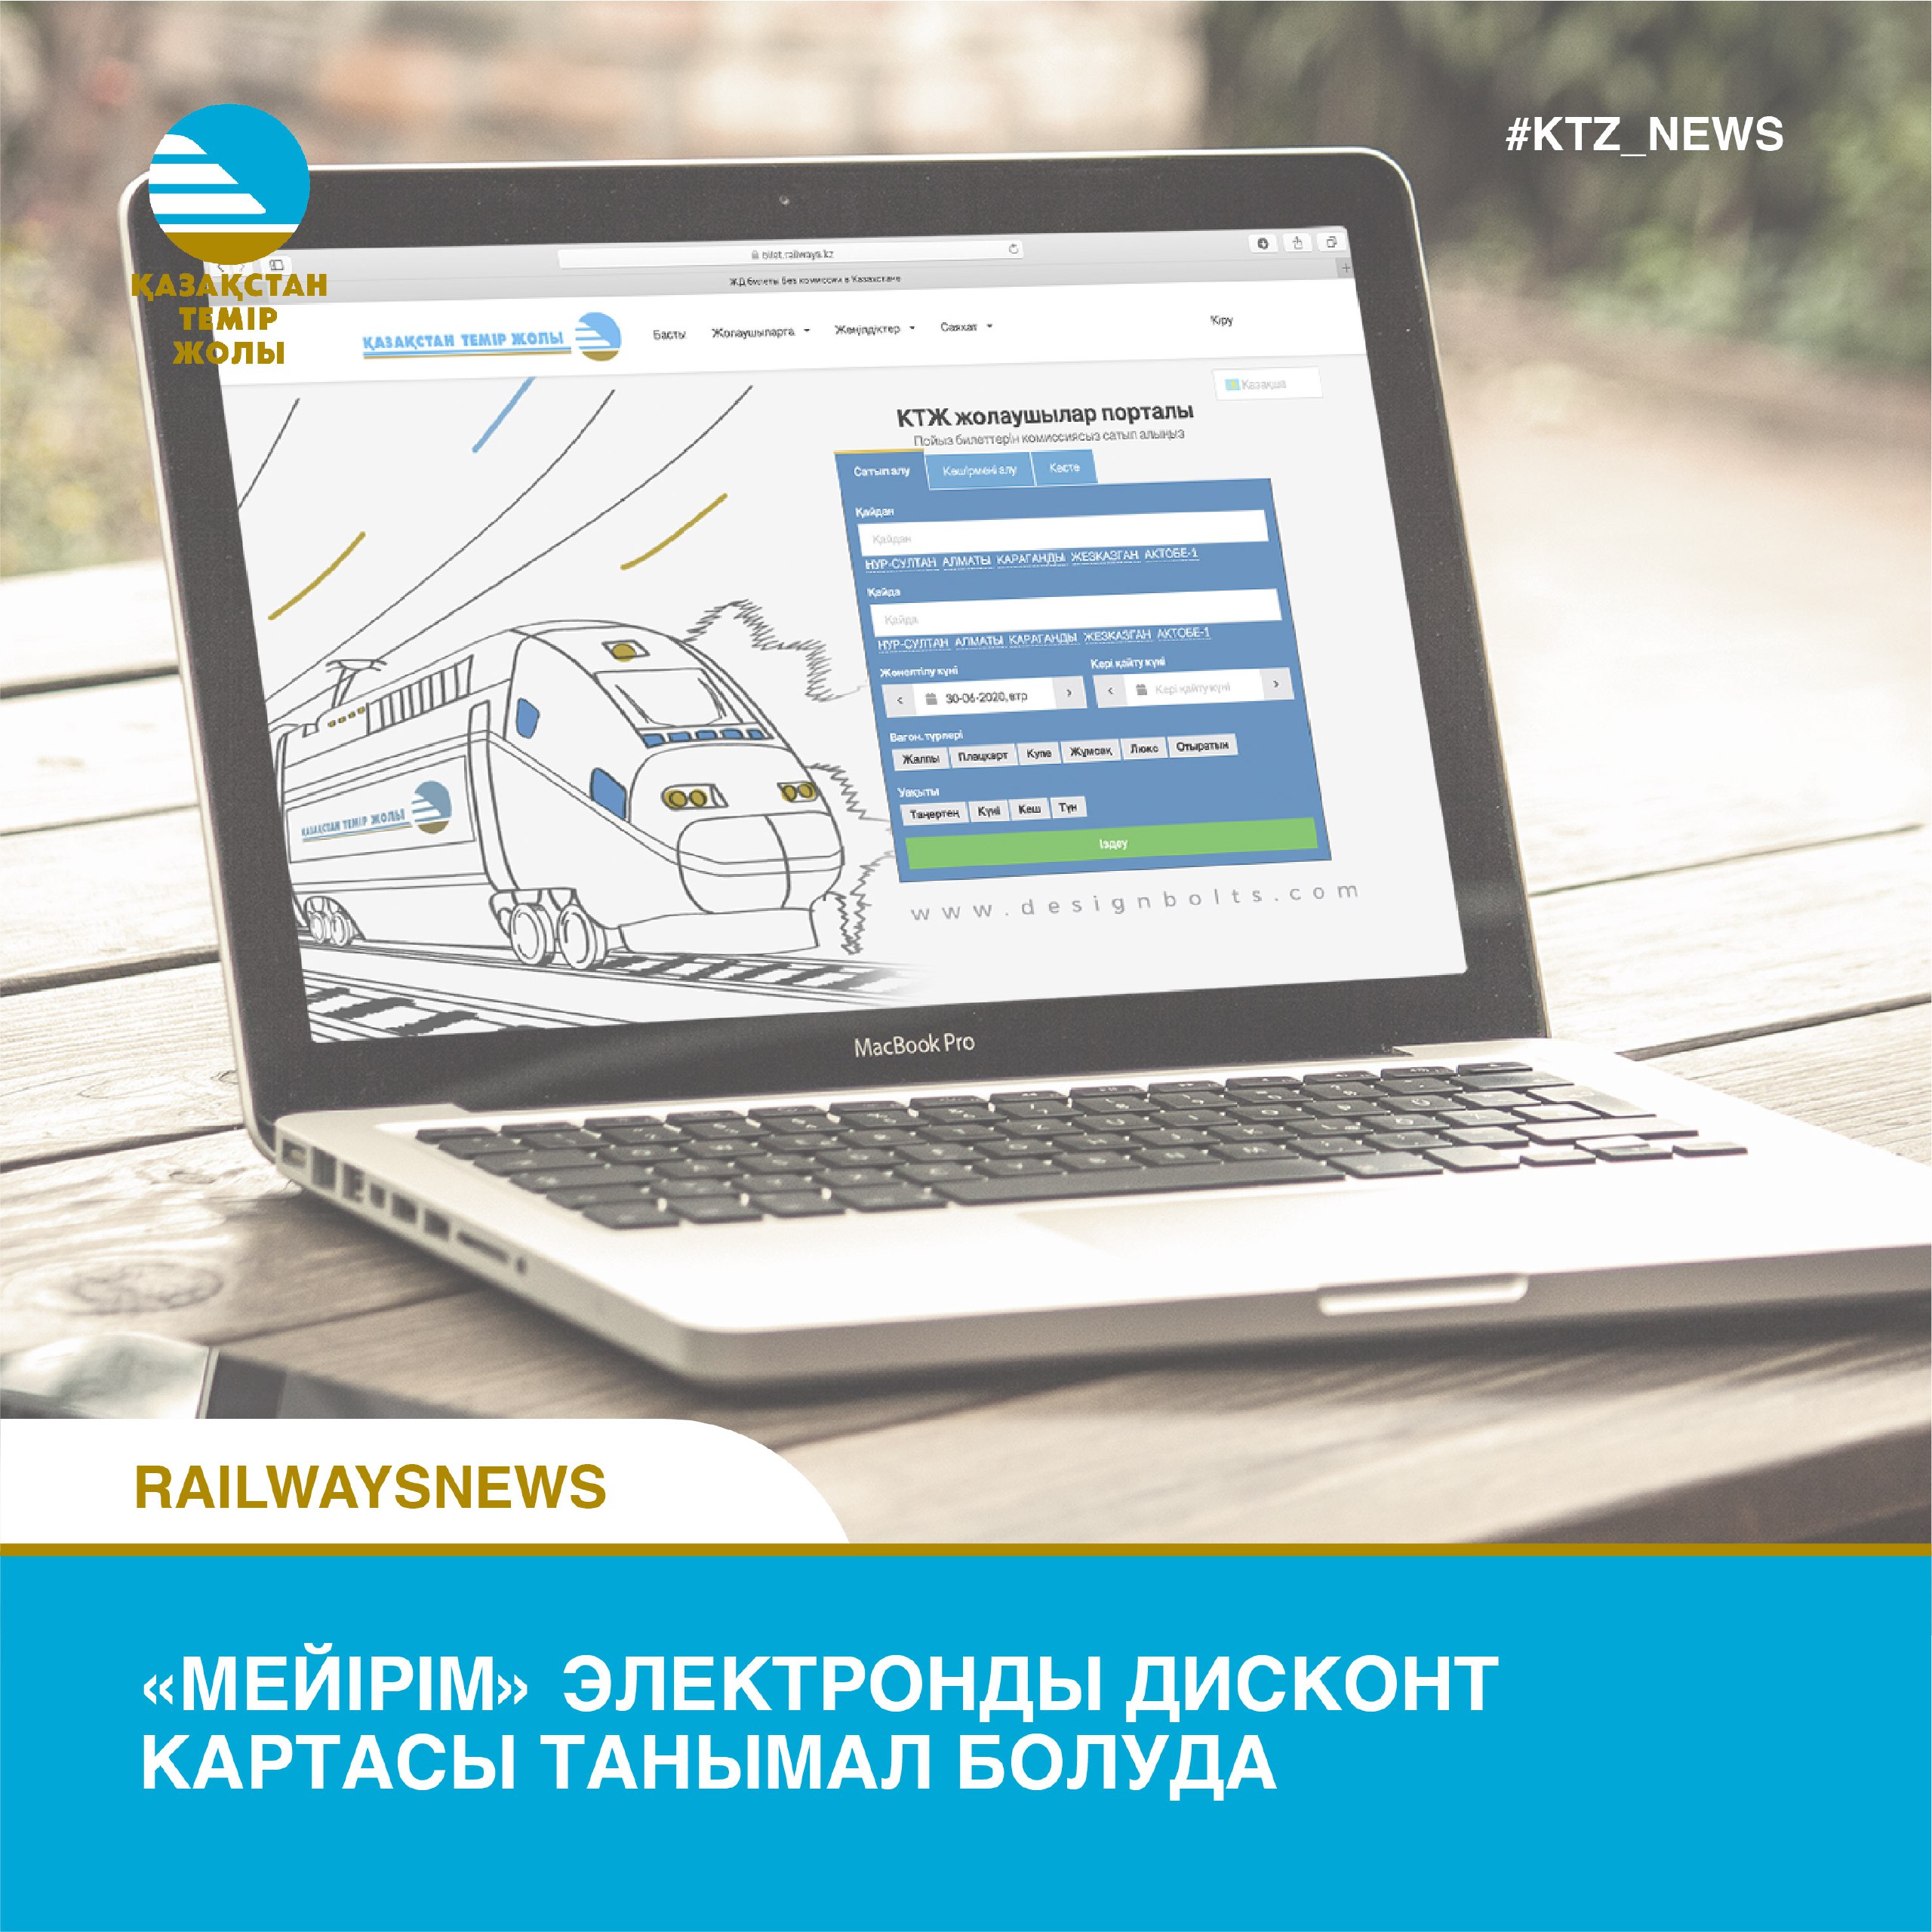 300 пассажиров с инвалидностью оформили электронную дисконт-карту «Мейірім»  - Железнодорожник Казахстана